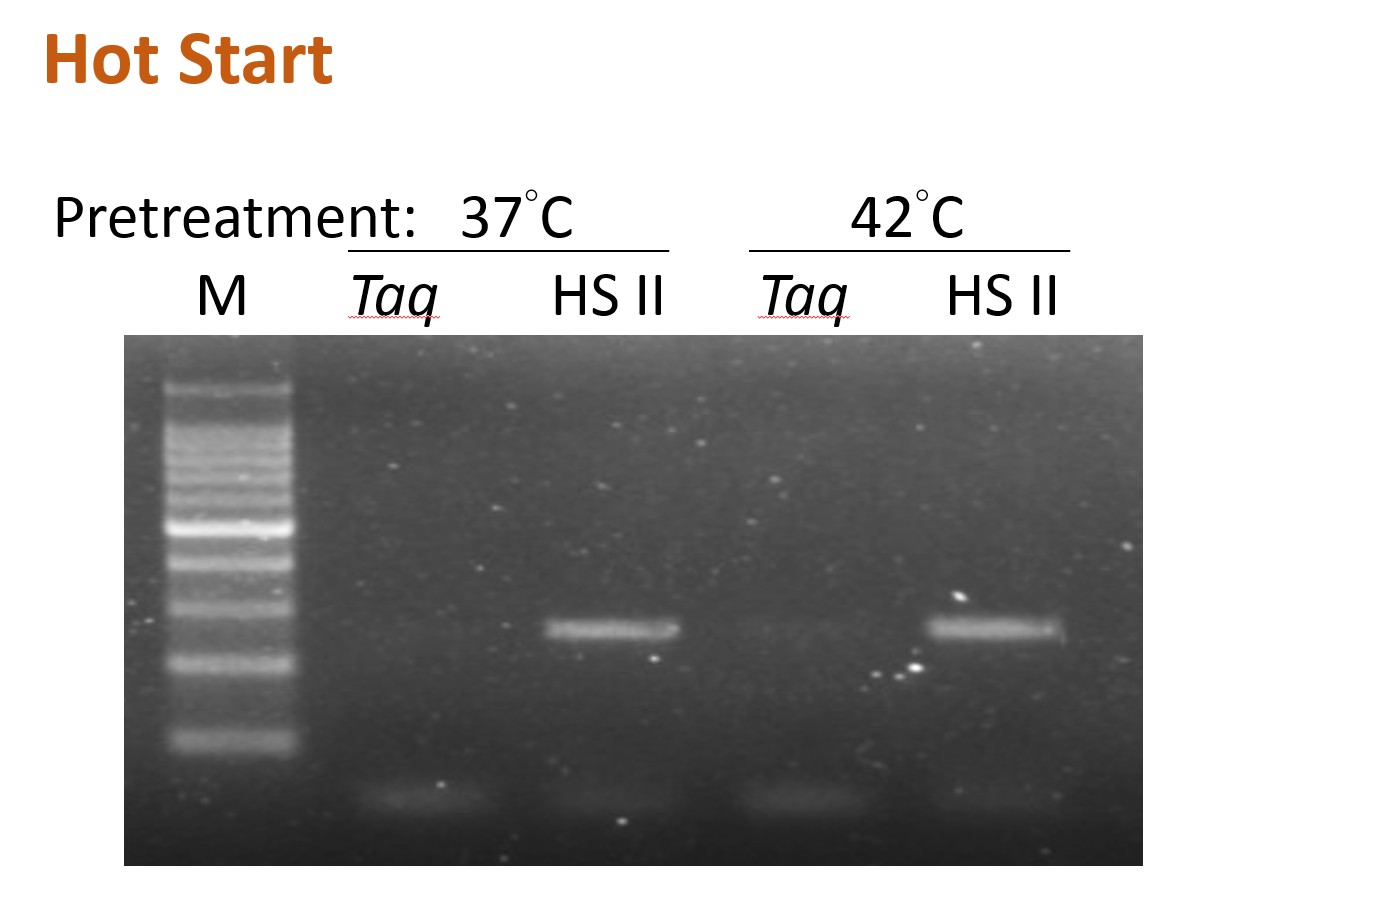 ExcelTaq™ Hot Start II DNA Polymerase (5 U/μl, 500 U)